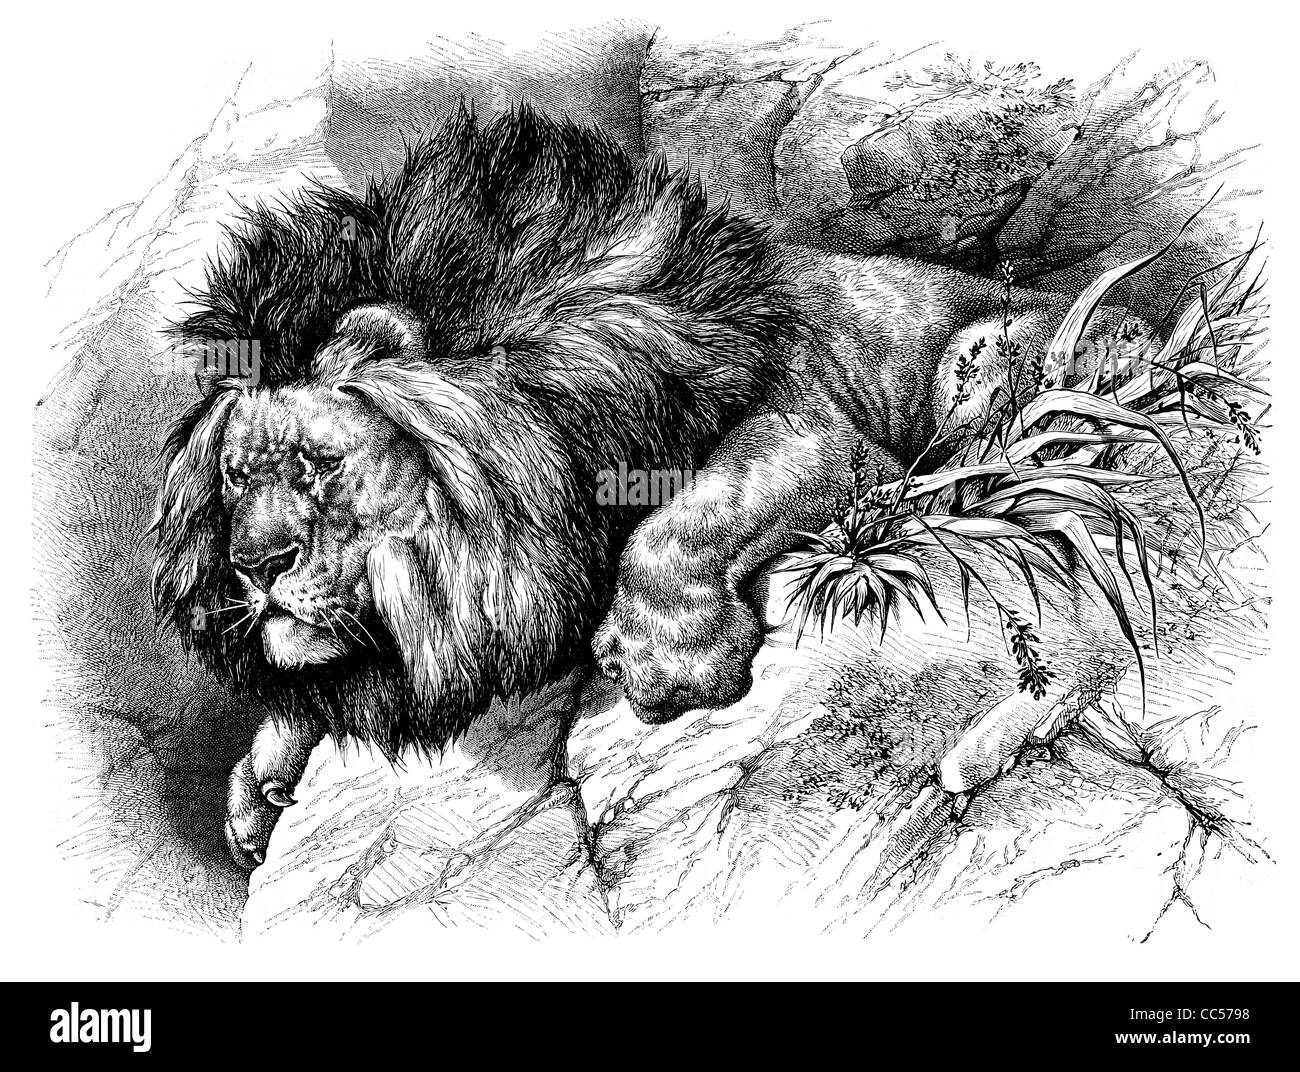 L'African Lion Panthera leo big cat Feline Safari Afrique Roi de la jungle paw claw mane habitat rochers sauvages tigre prédateur bête Banque D'Images